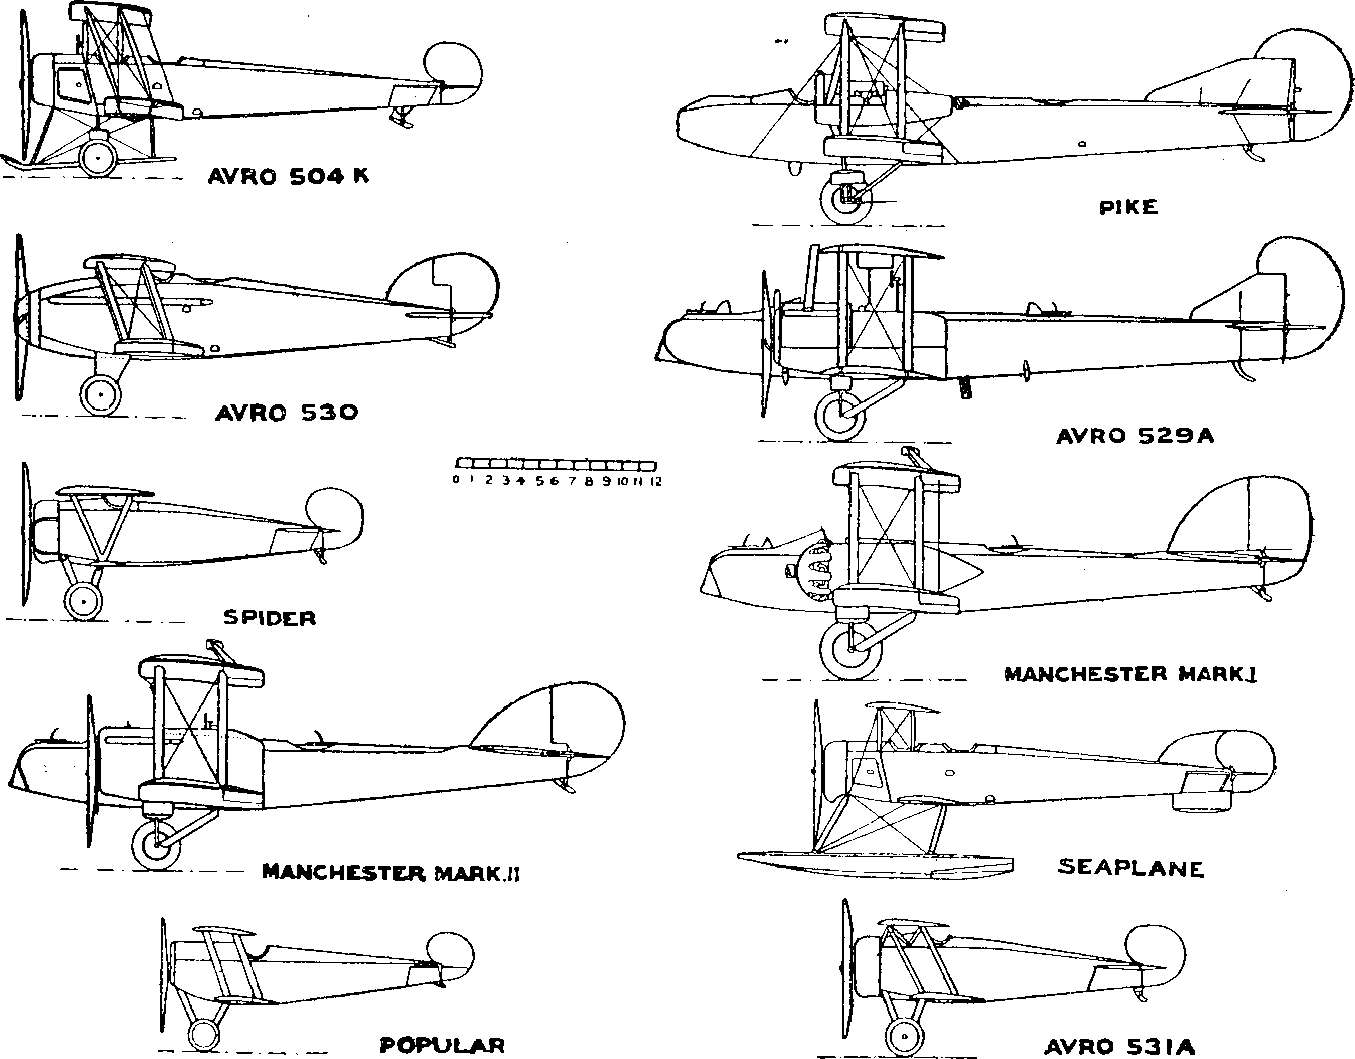 Segelflug, Motorflug und Modellflug sowie Luftfahrt und Luftverkehr im Deutschen Reich (Weimarer Republik) im Jahre 1919